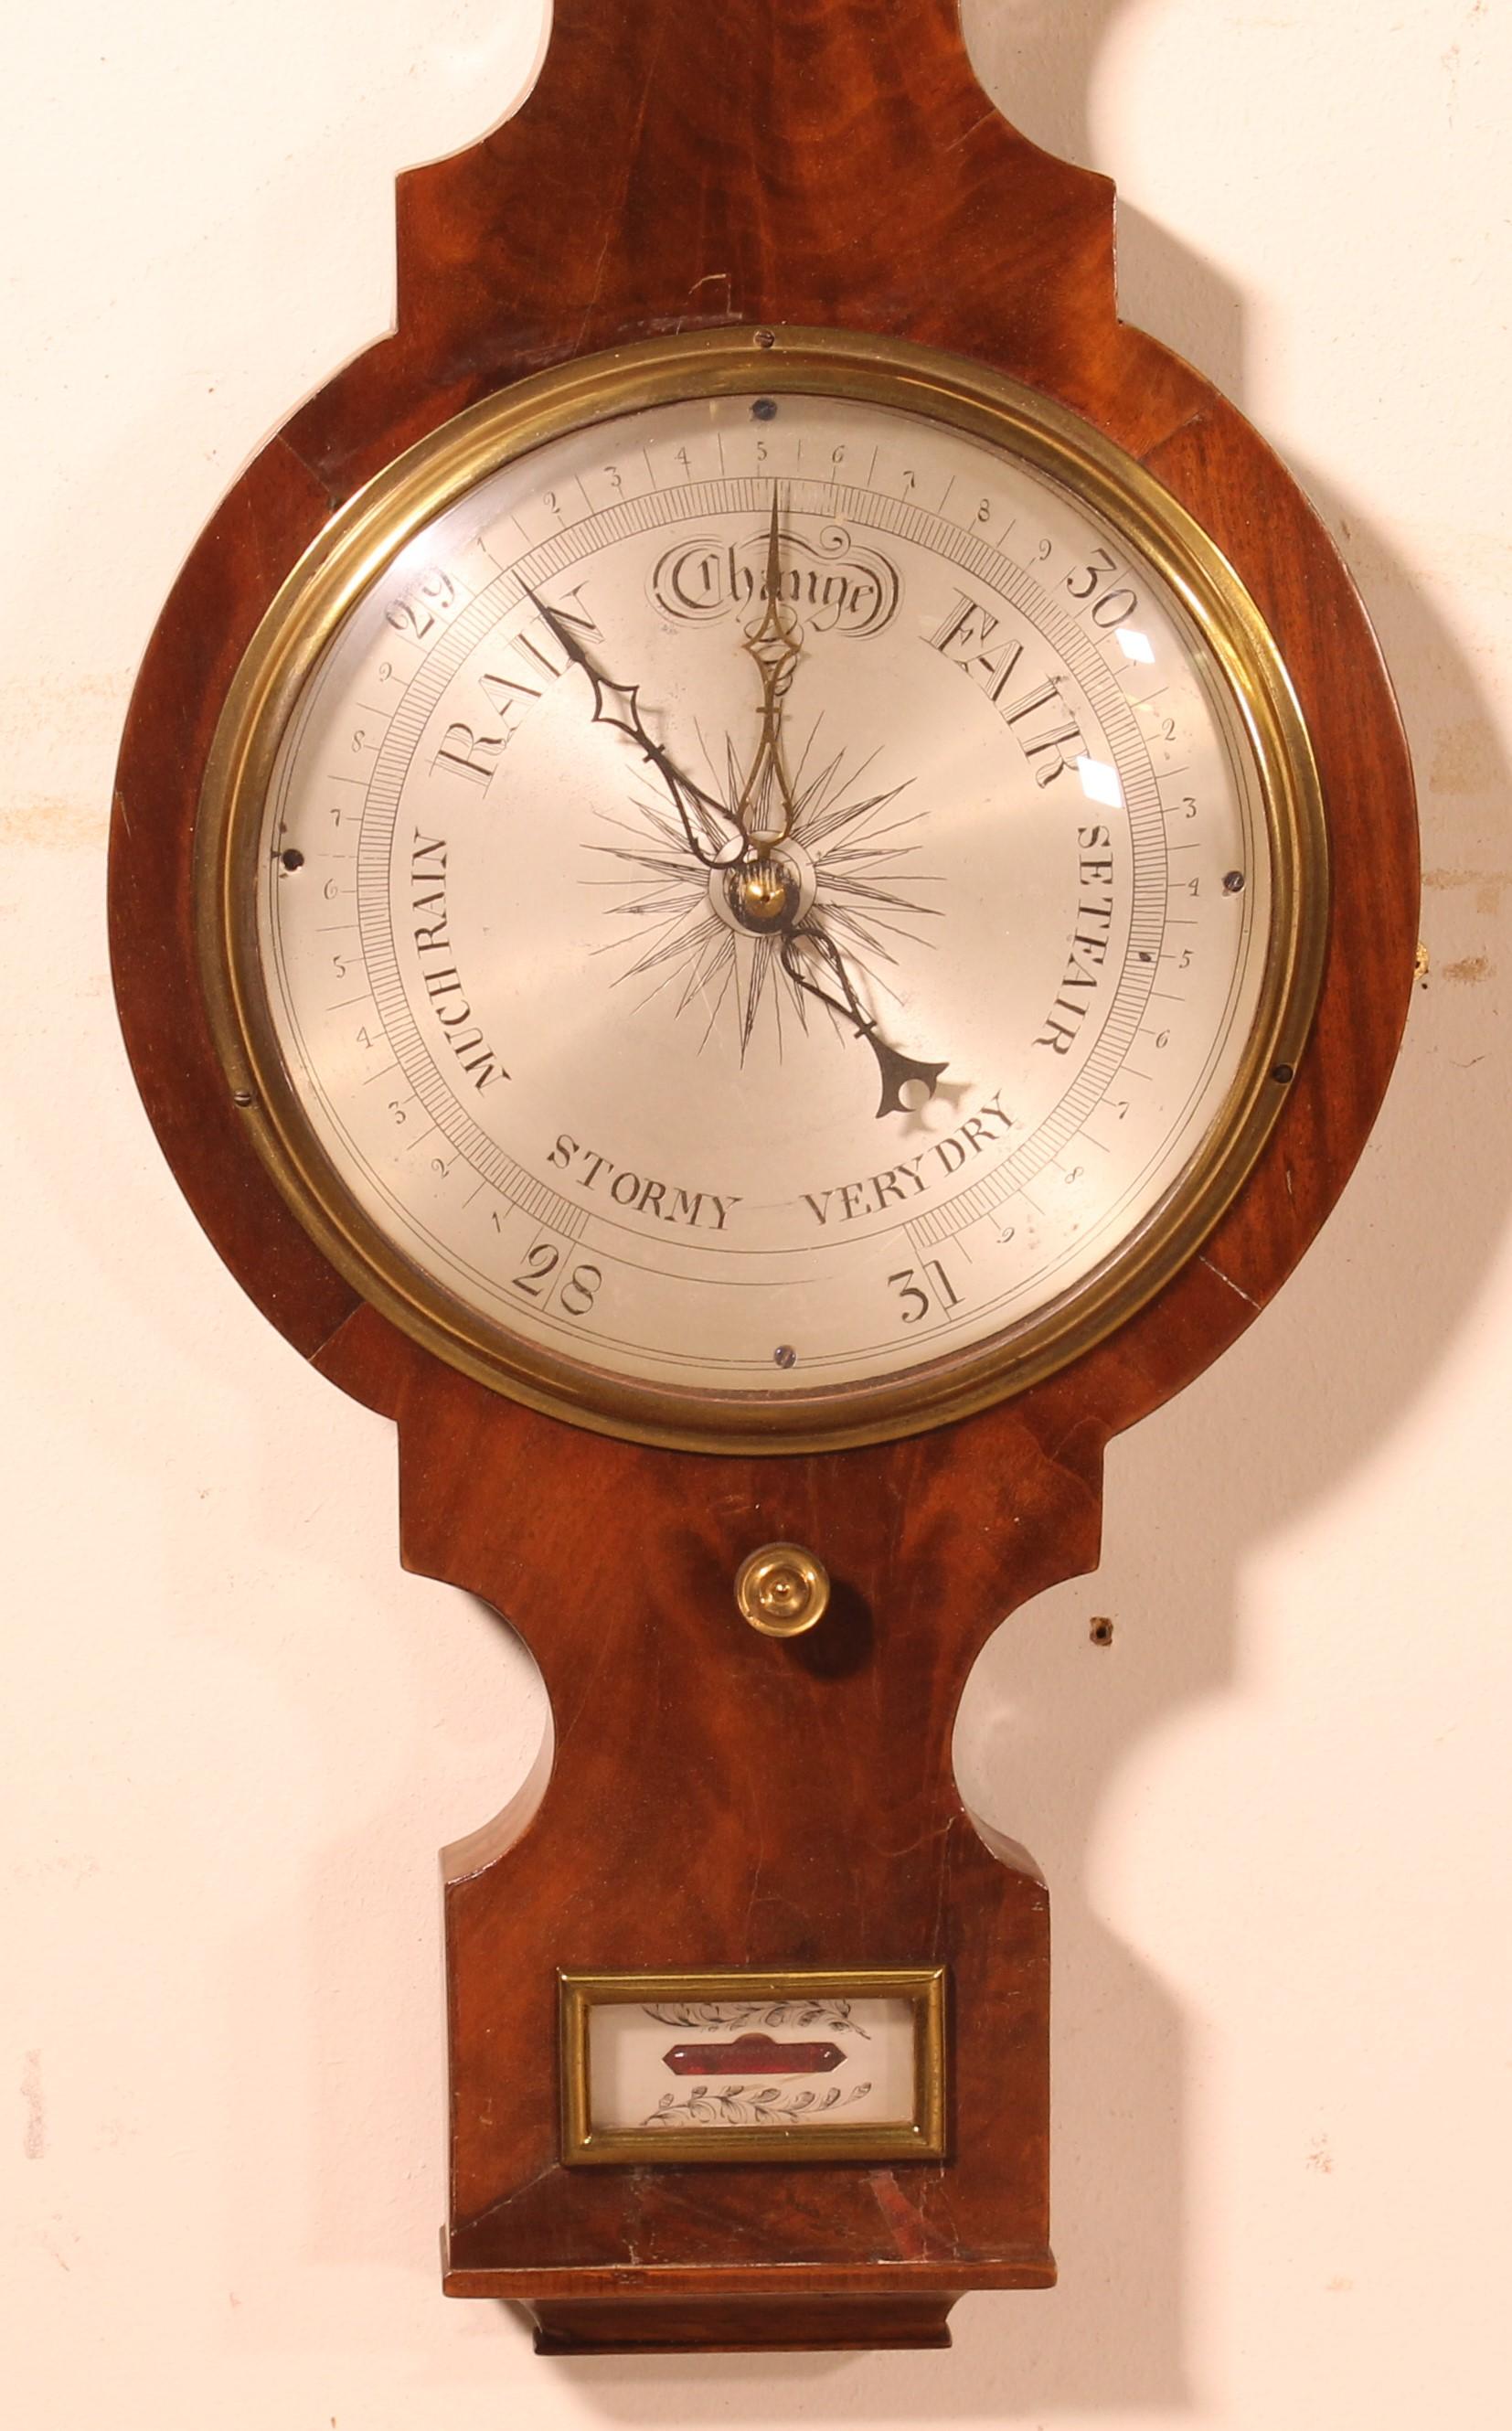 Barometer aus Nussbaumholz aus dem 19. Jahrhundert aus England

Das Thermometer funktioniert und der Barometermechanismus ist vorhanden

In hervorragendem Zustand und sehr schöne Patina